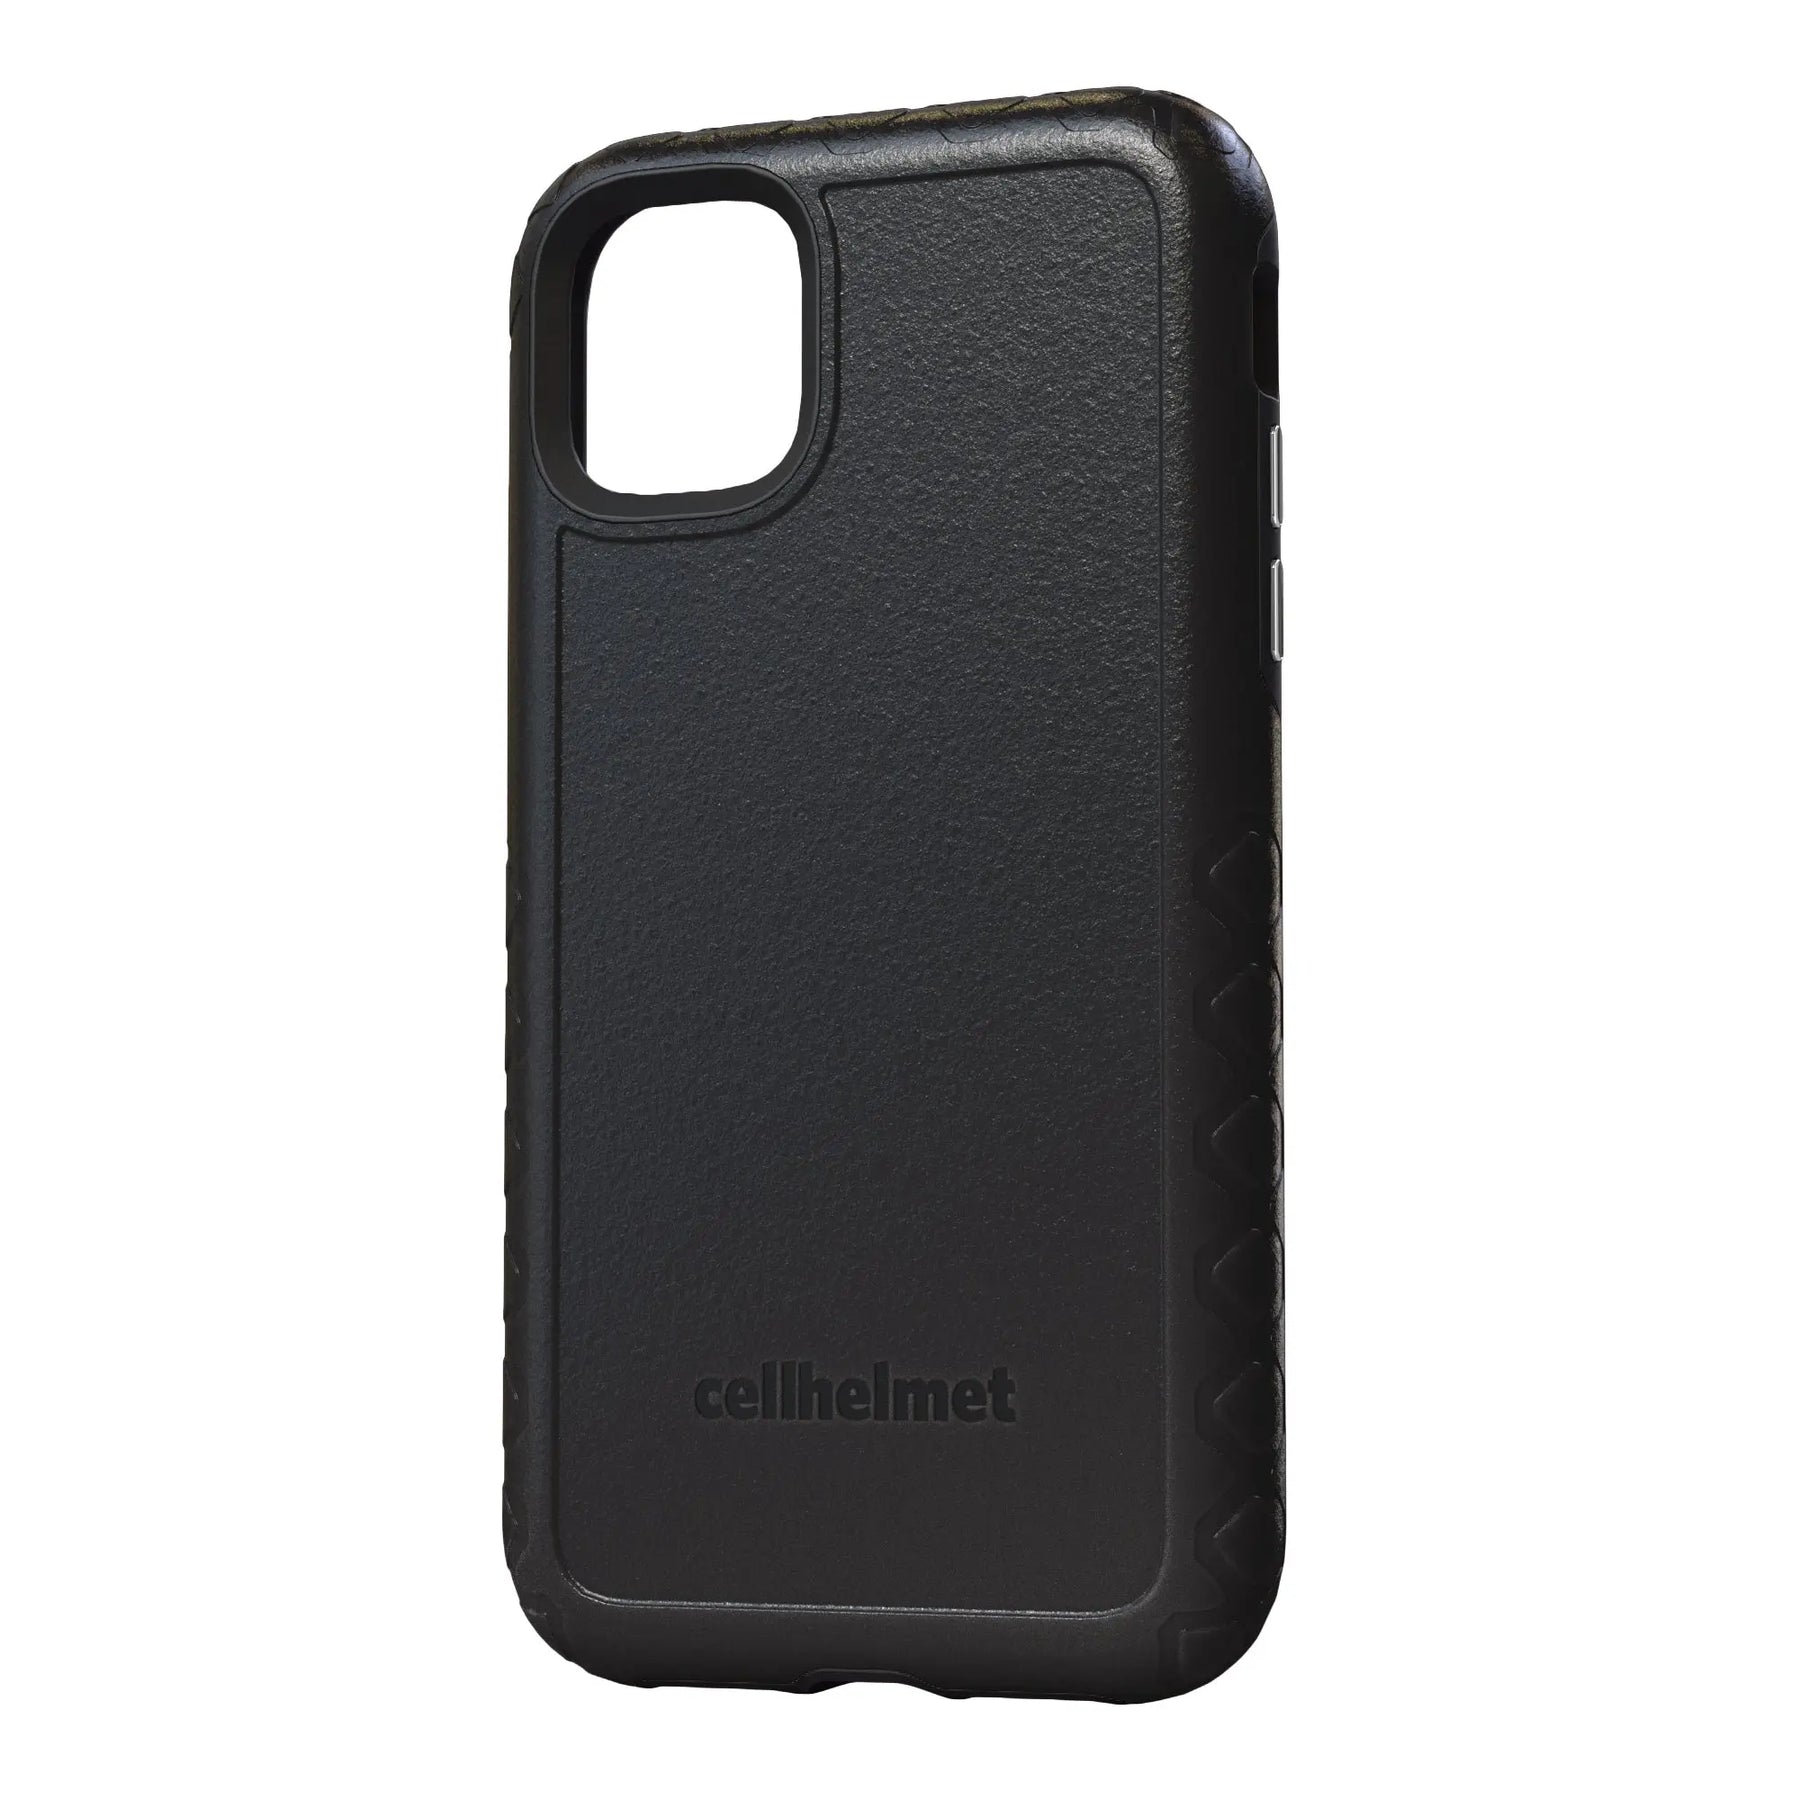 cellhelmet Black Custom Case for iPhone 11 Pro Max